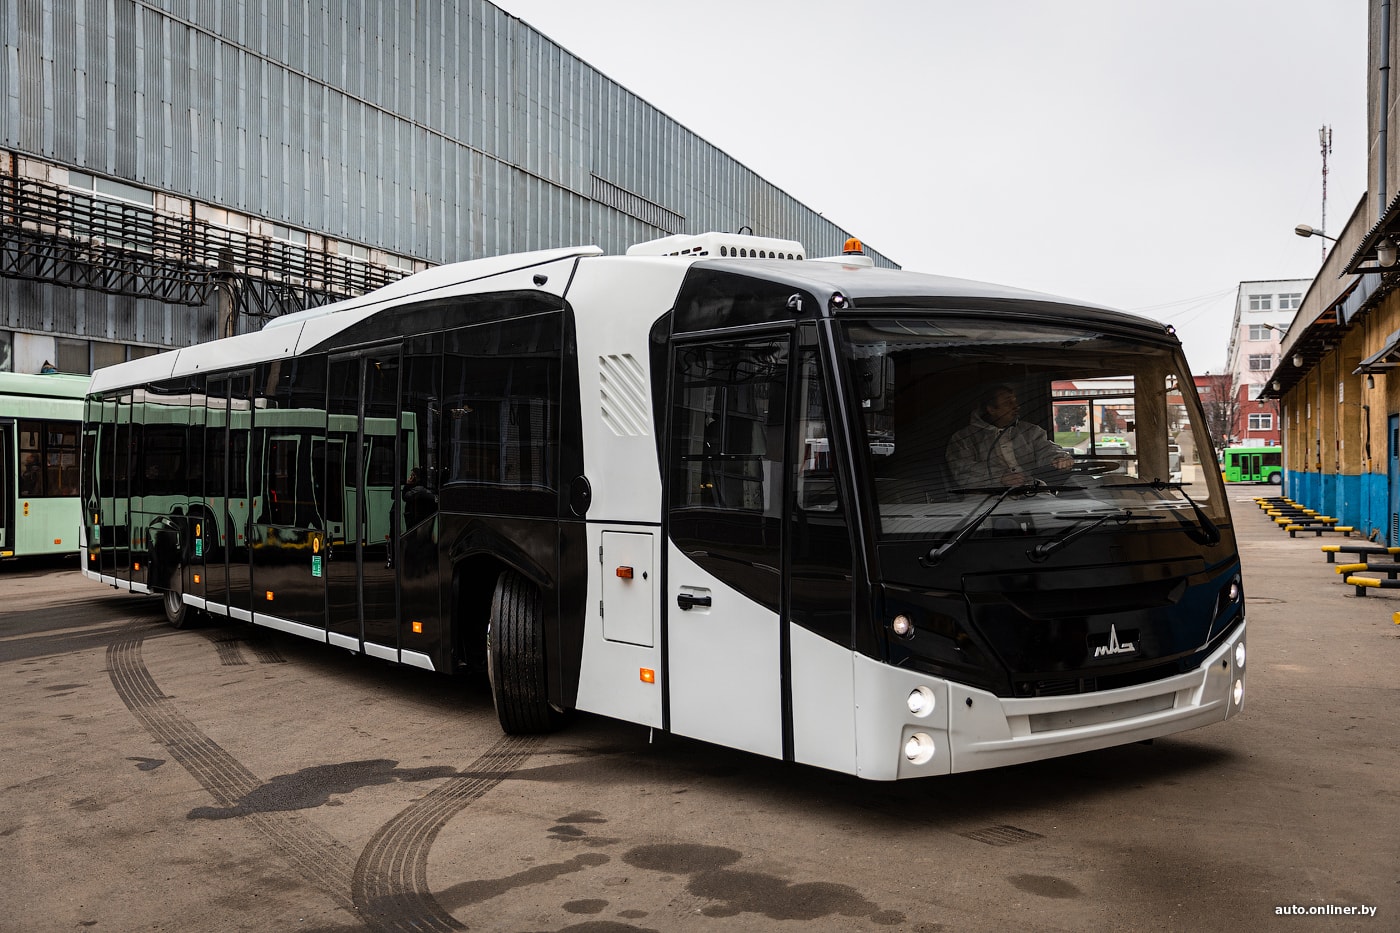 Особенный. Минский автозавод выпустил перронный автобус нового поколения автобусы,Марки и модели,новости,Новые модели